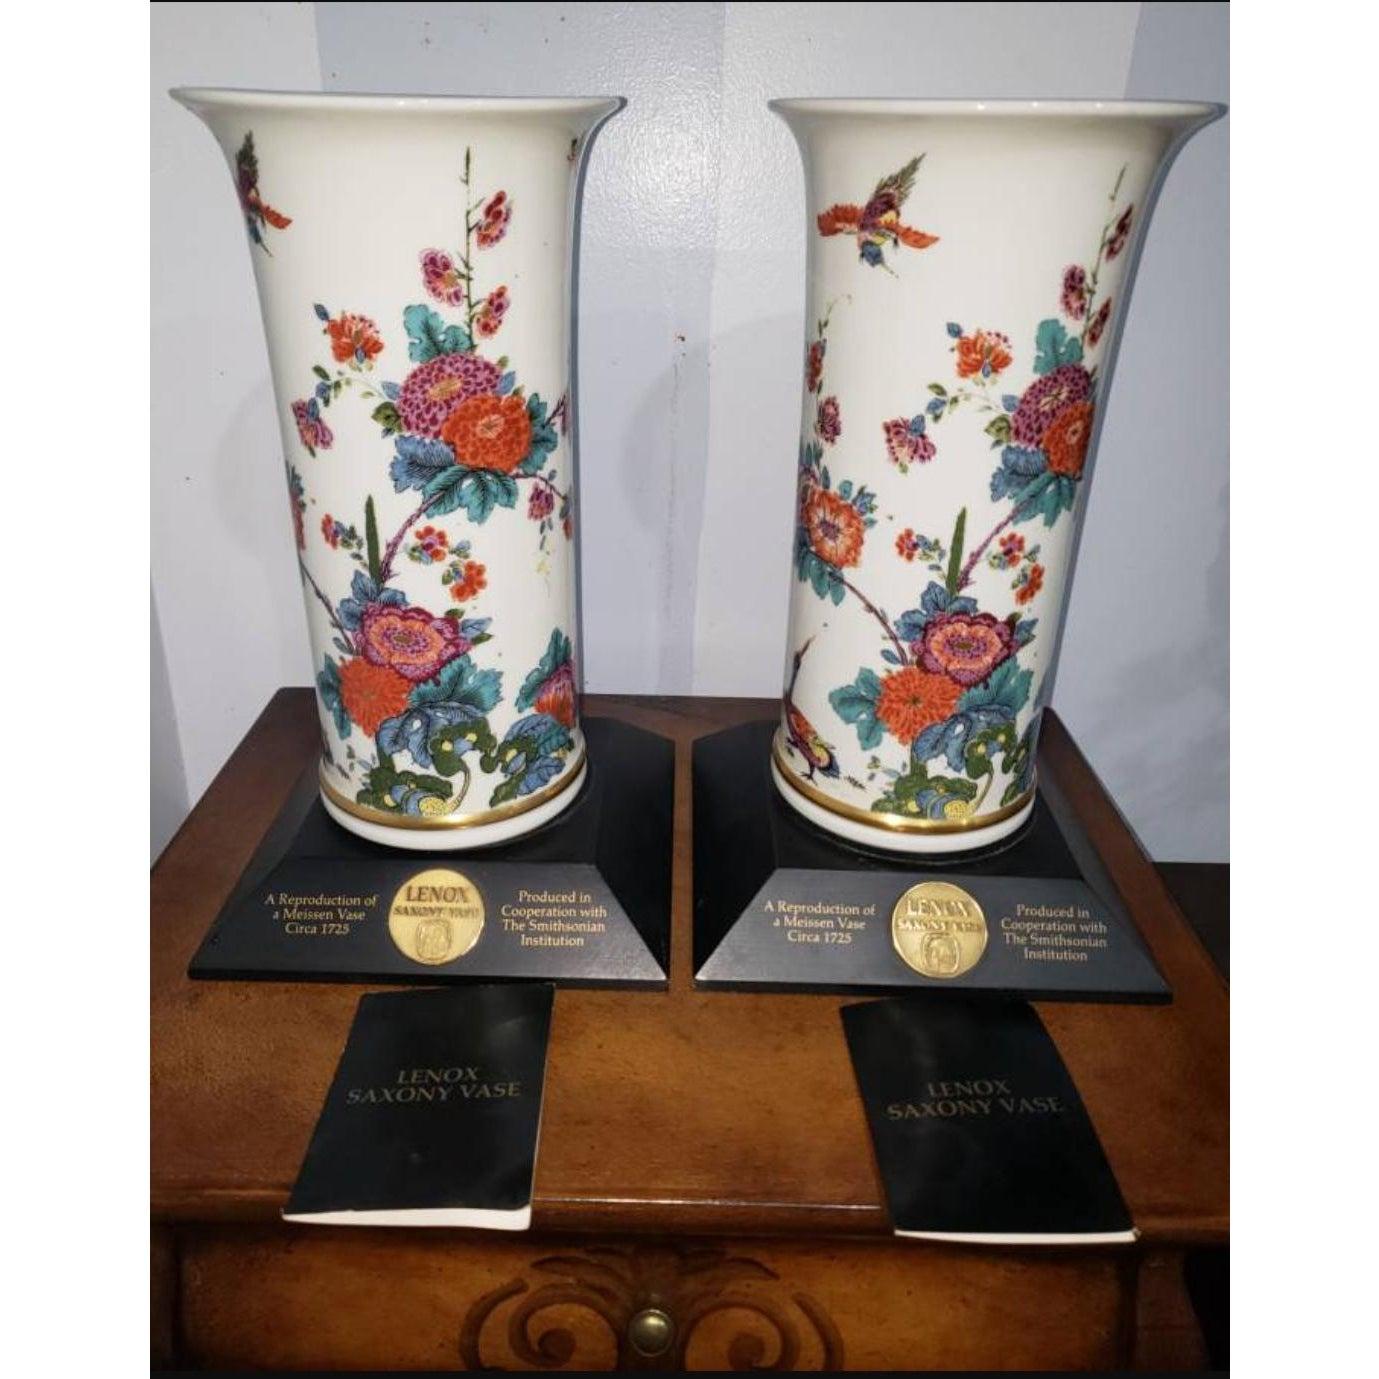 Une paire de grands vases de Saxe Lennox 1979, première reproduction officielle d'un vase de Meissen Circa 1725 produite par la Smithsonian Institution. Ces vases sont flanqués d'une bande en or 22 carats et sont accompagnés d'une base en bois noir